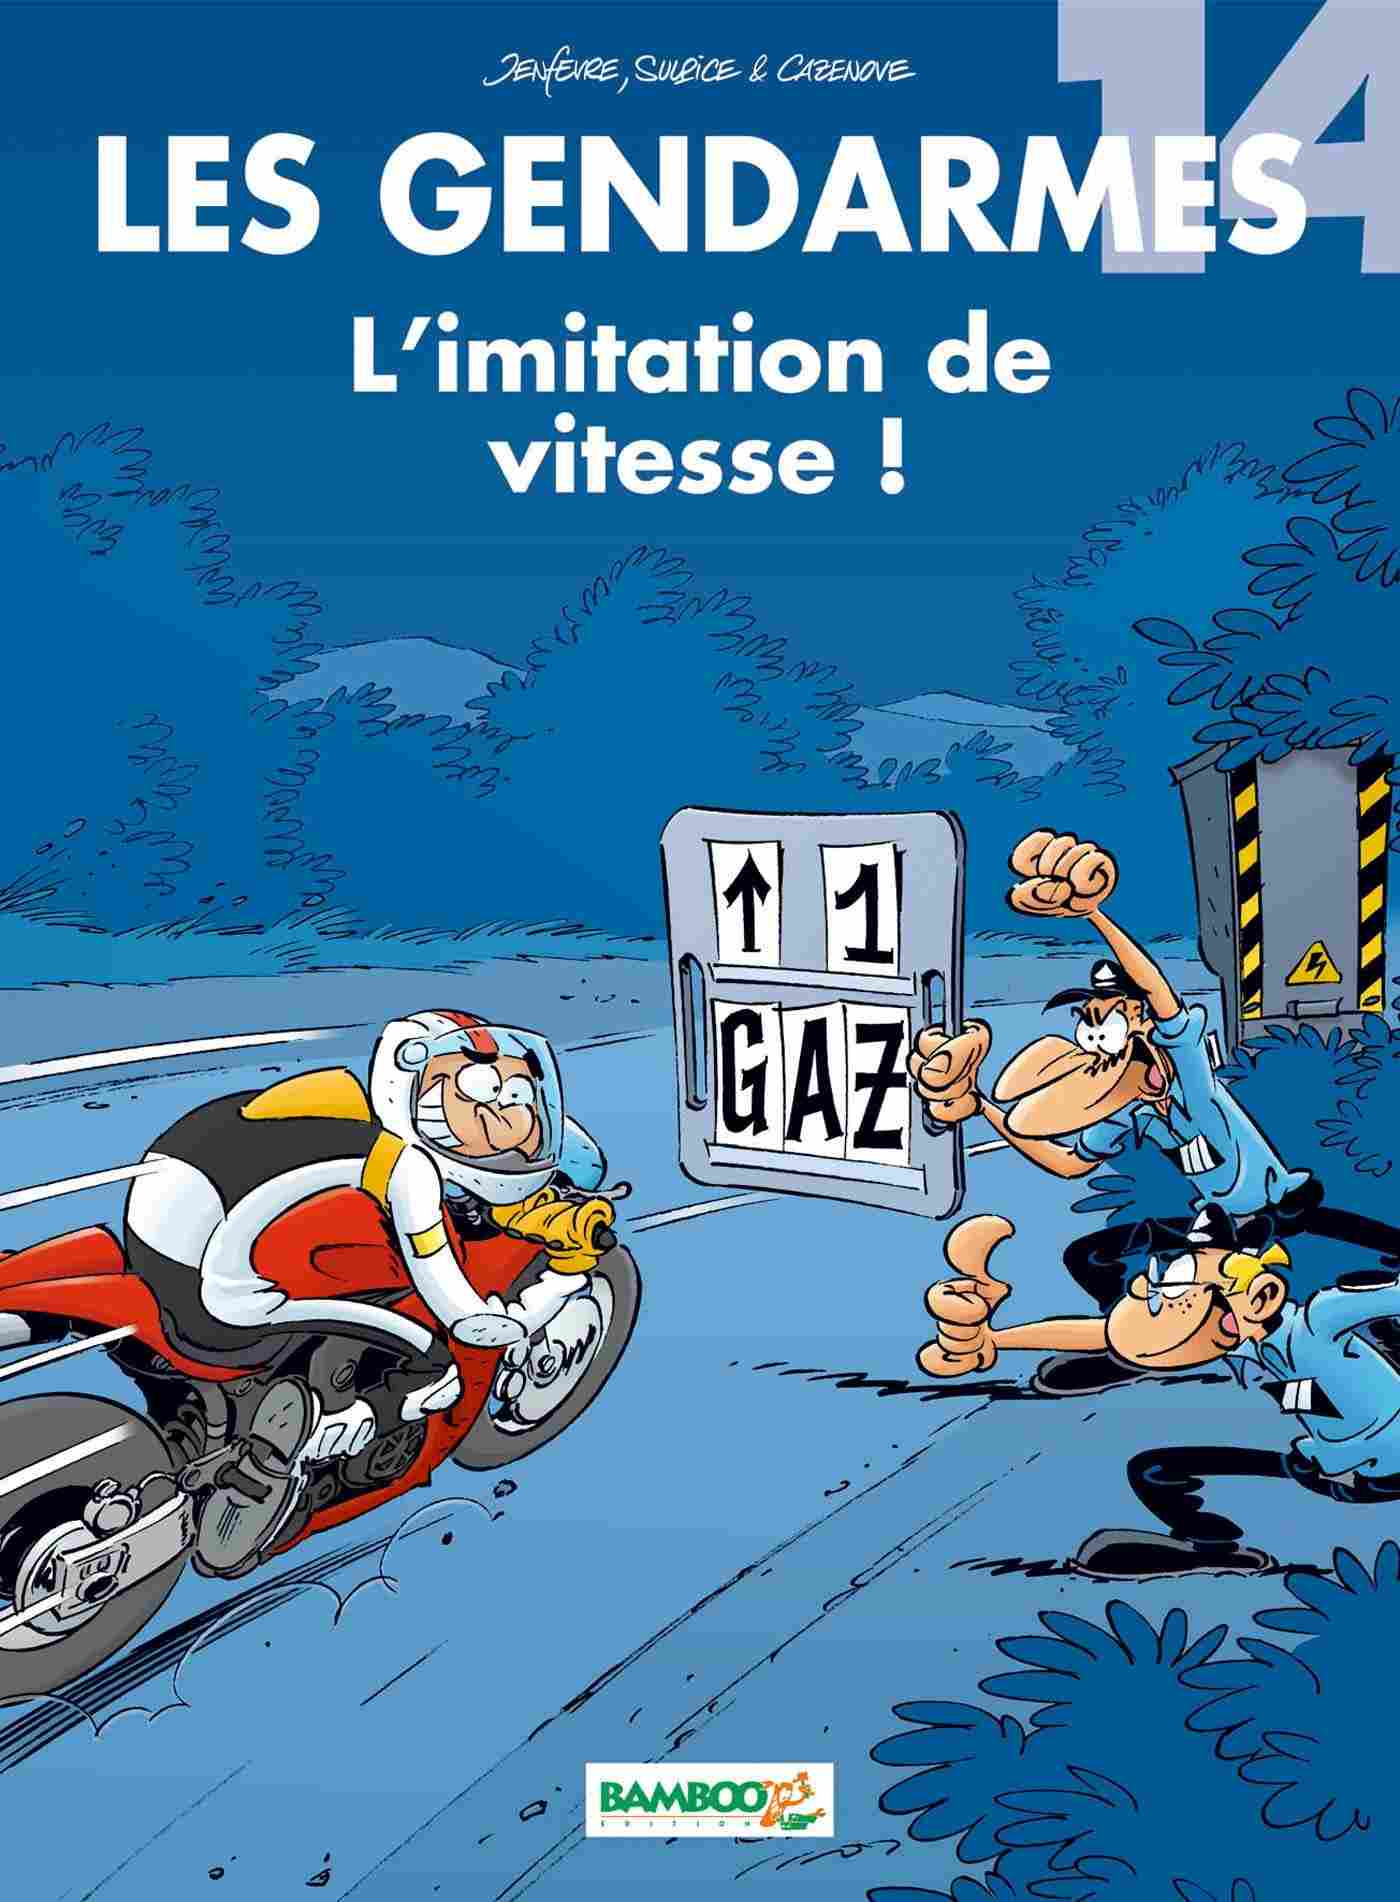 Voir l'image Les-Gendarmes-Tome-14-L-imitation-de-vitesse-Les-Gendarmes-451696-d256.jpg en taille reelle